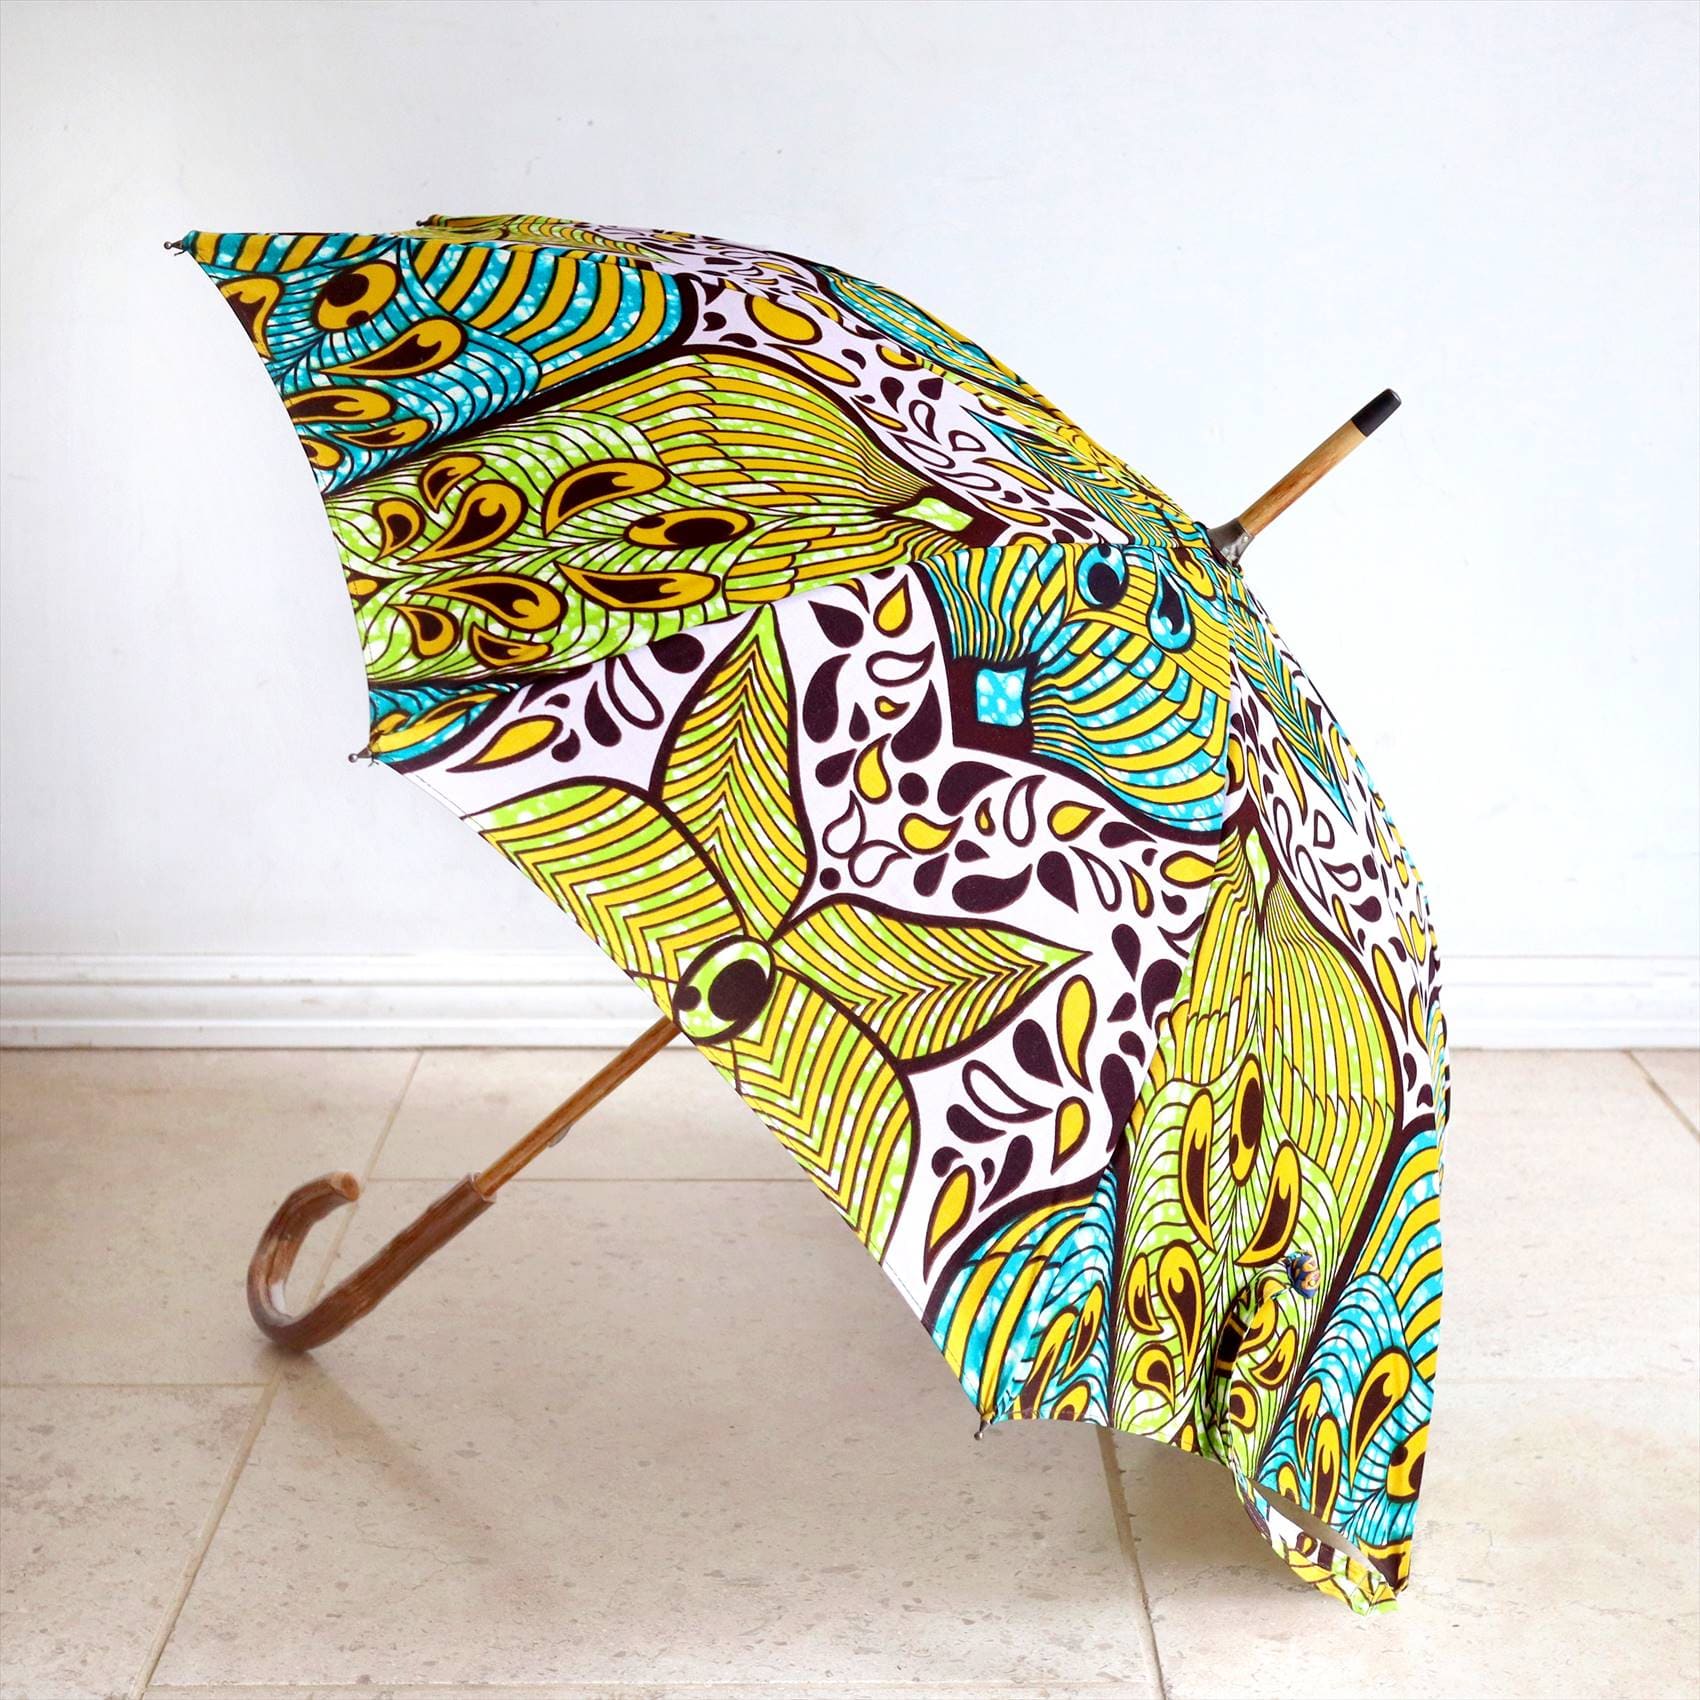 パーニュ・西アフリカのプリント布をつかった傘 Pagne/West African Fabric 大きなリーフモチーフ　グリーン、ピンクグレー